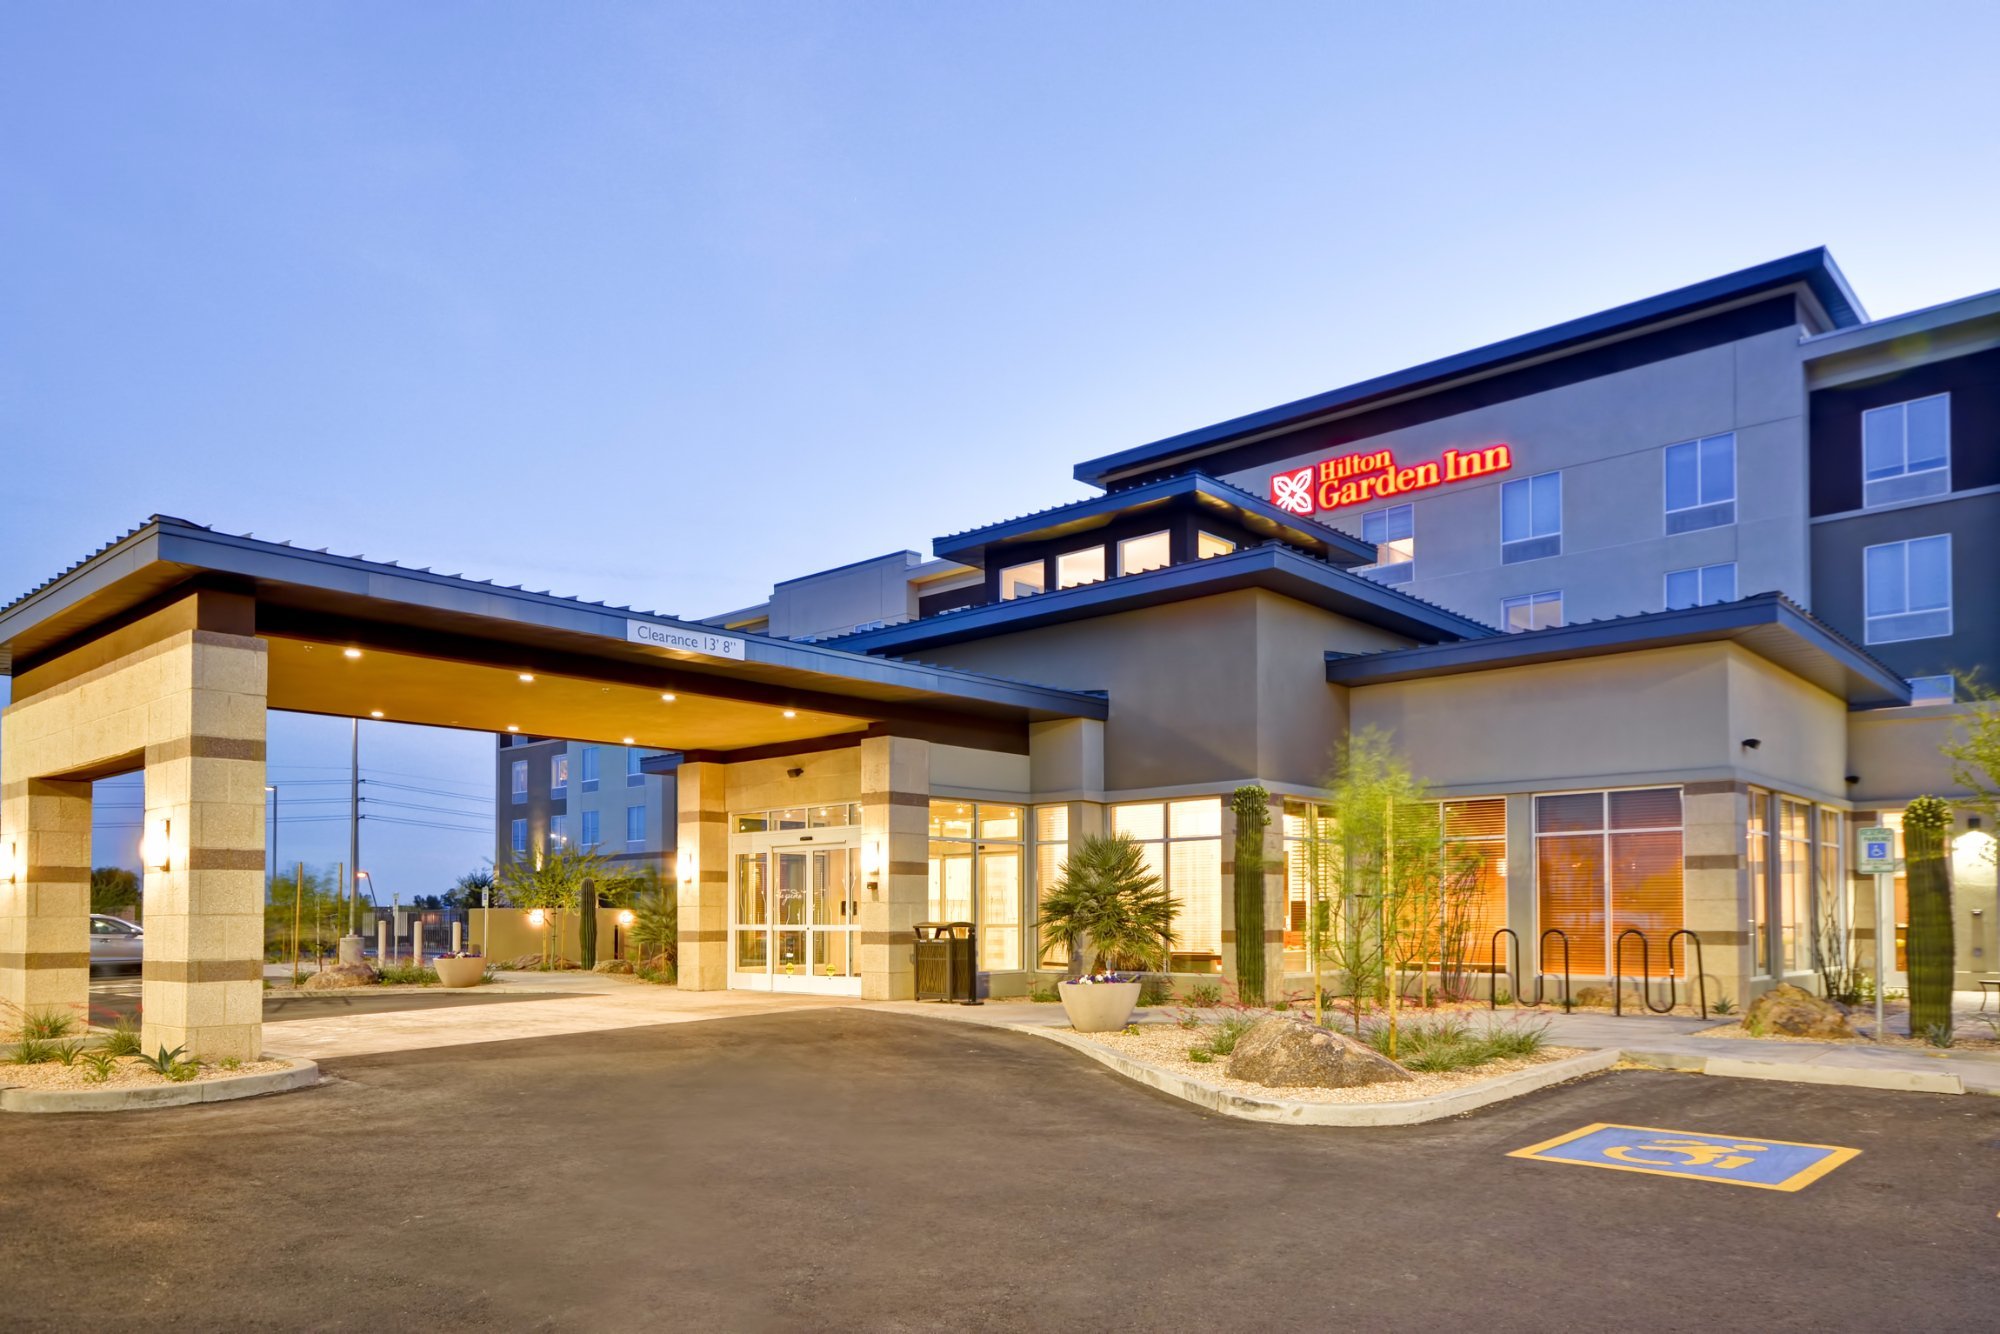 Photo of Hilton Garden Inn Phoenix/Tempe ASU Area, Tempe, AZ